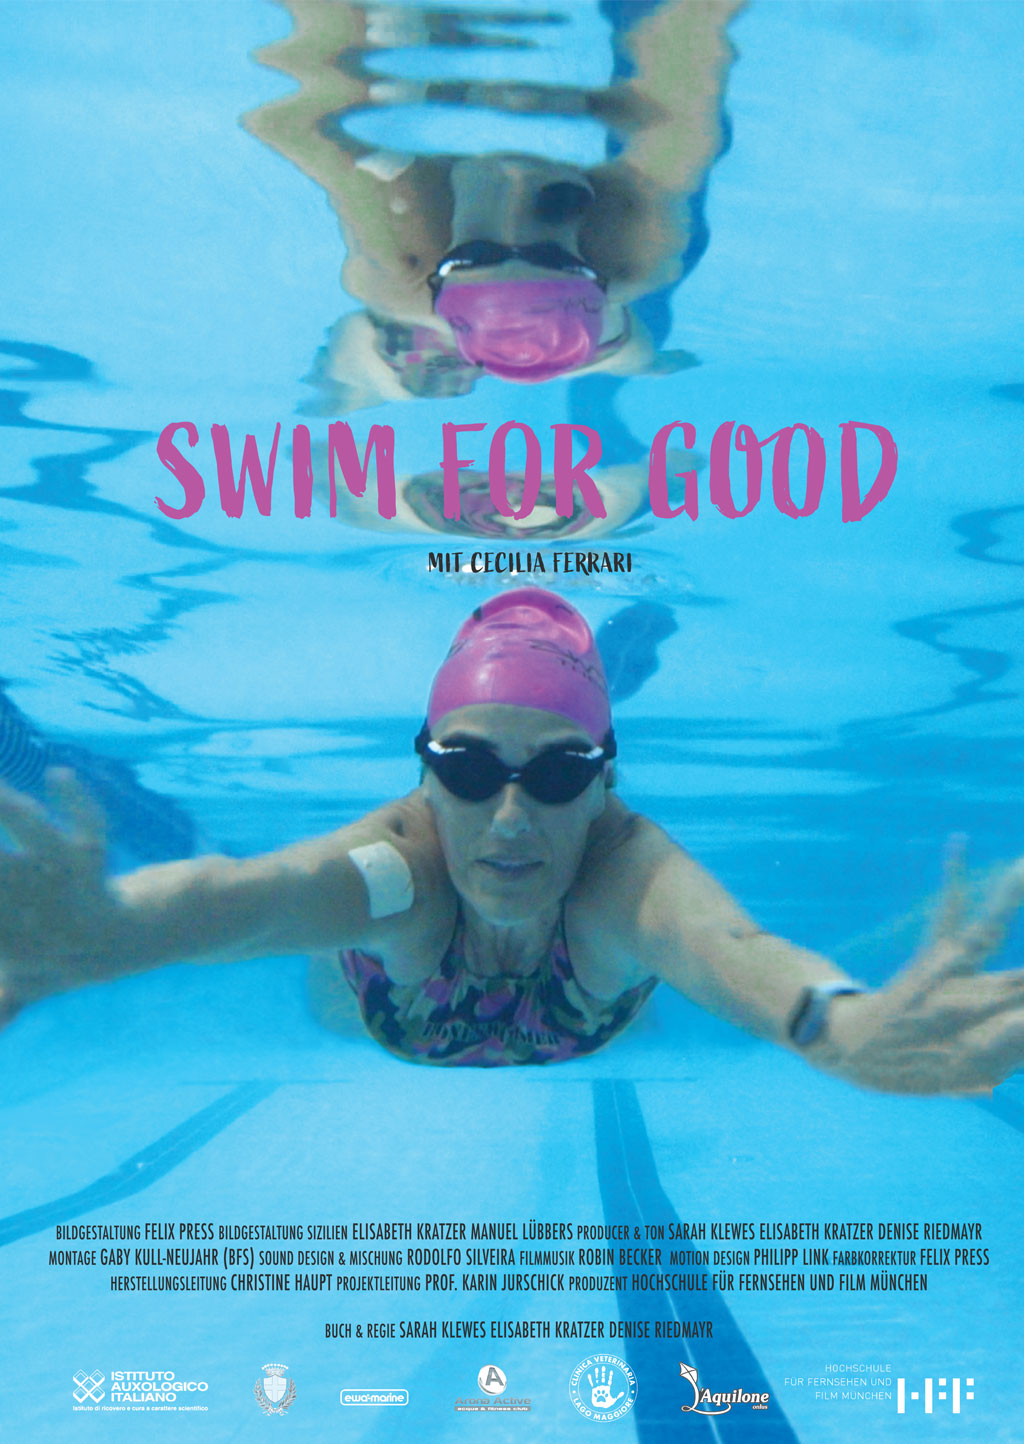 Swim for good poster.jpg